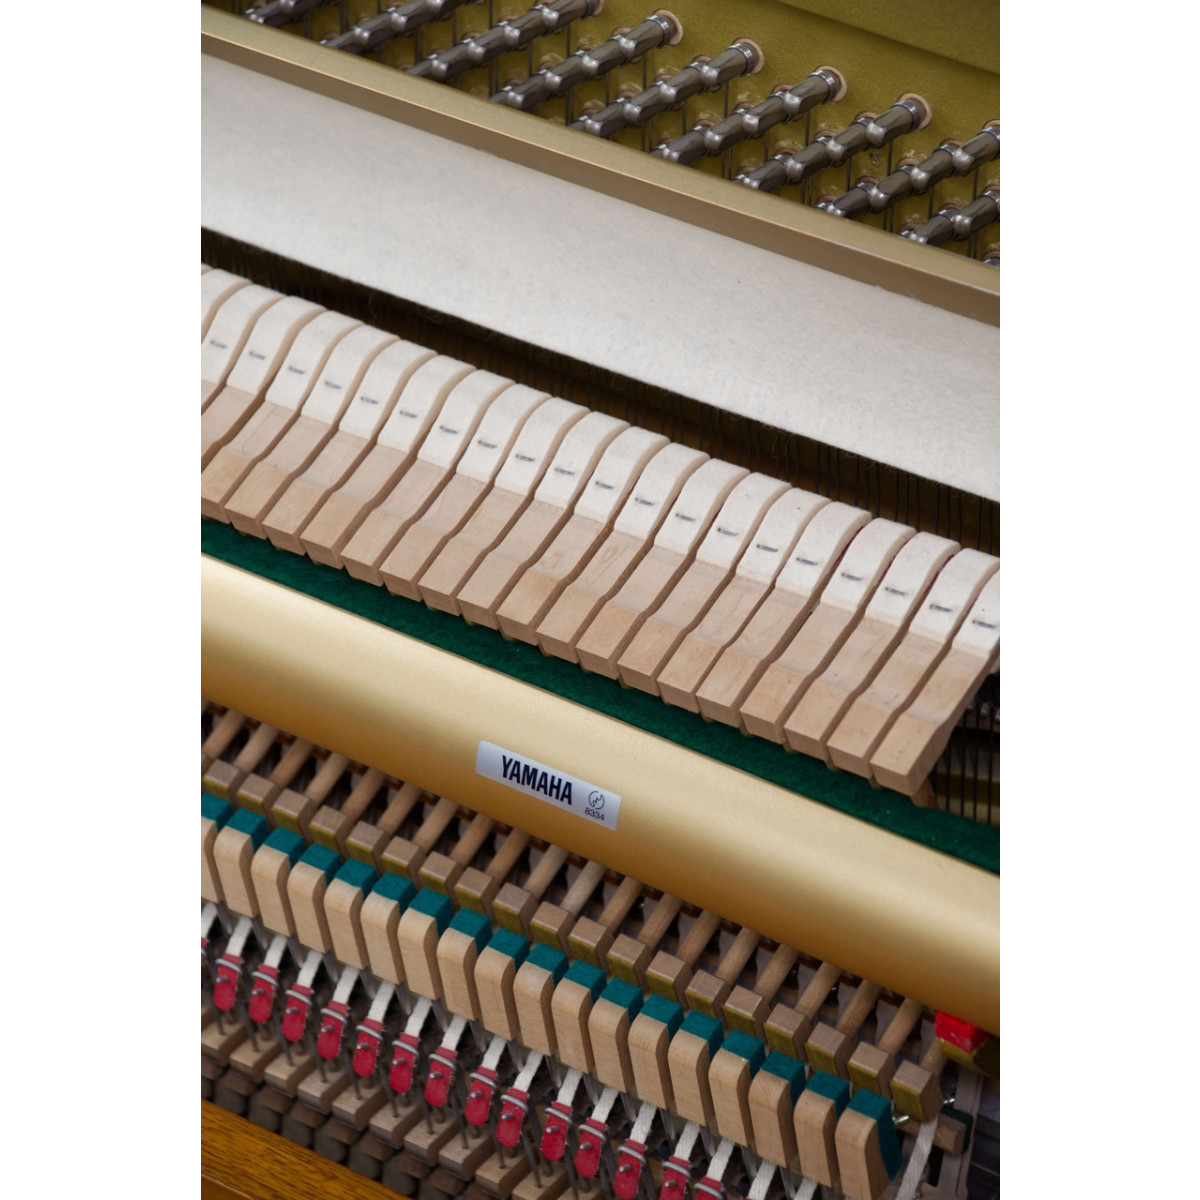 Yamaha U1 N Klavier, Holzoberfläche Kirschbaum, gebraucht kaufen bei Pianelli, Ansicht: Mechanik